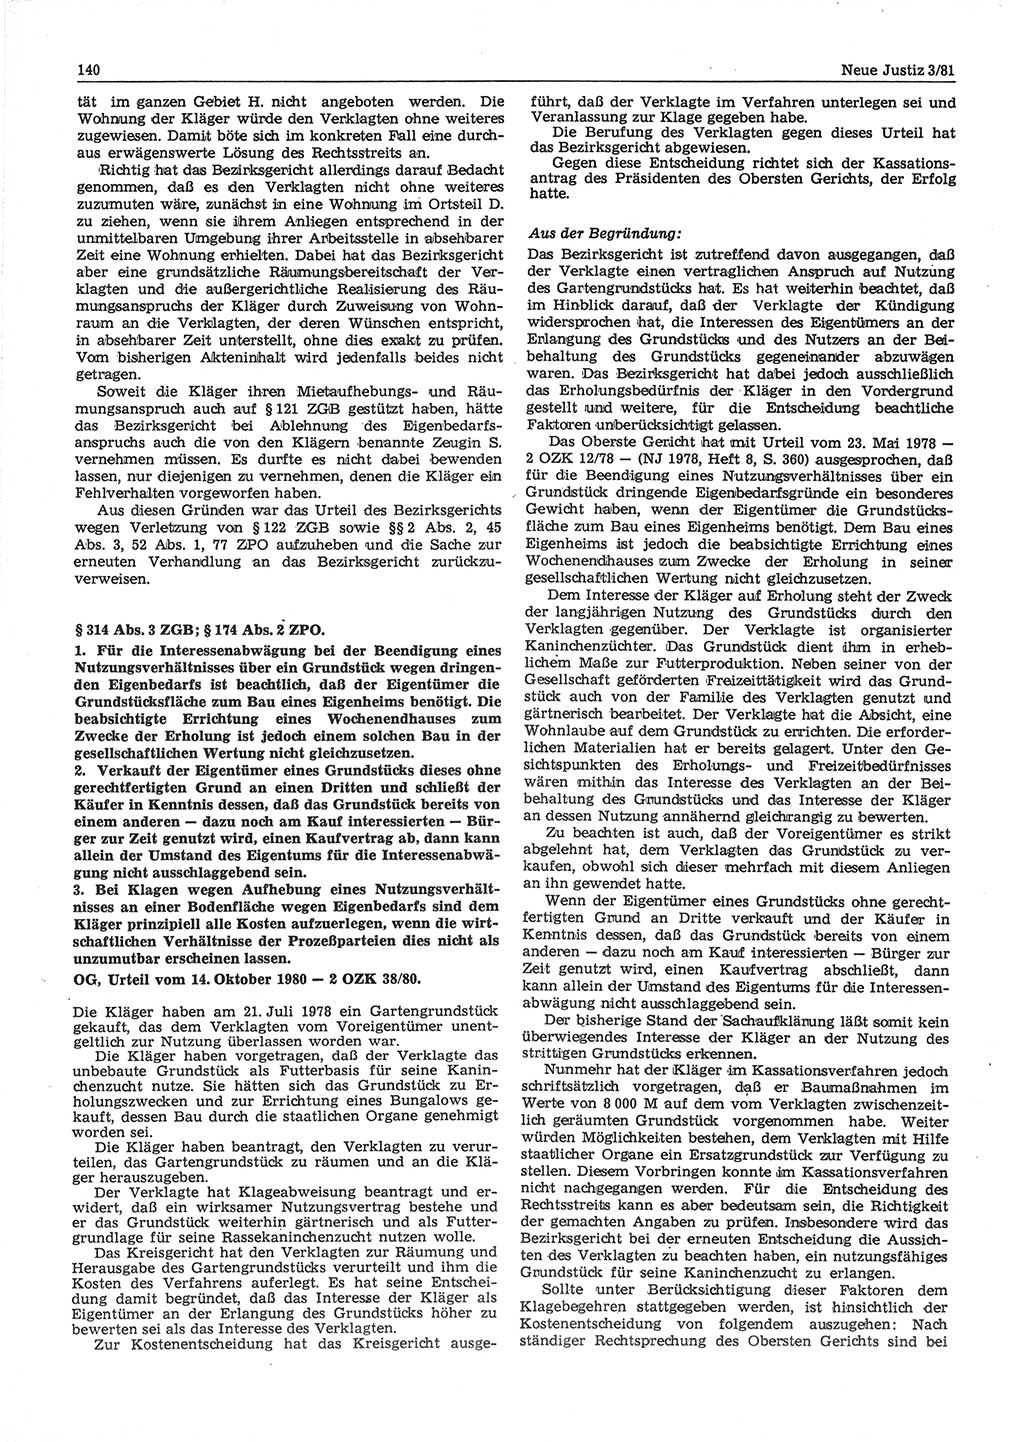 Neue Justiz (NJ), Zeitschrift für sozialistisches Recht und Gesetzlichkeit [Deutsche Demokratische Republik (DDR)], 35. Jahrgang 1981, Seite 140 (NJ DDR 1981, S. 140)